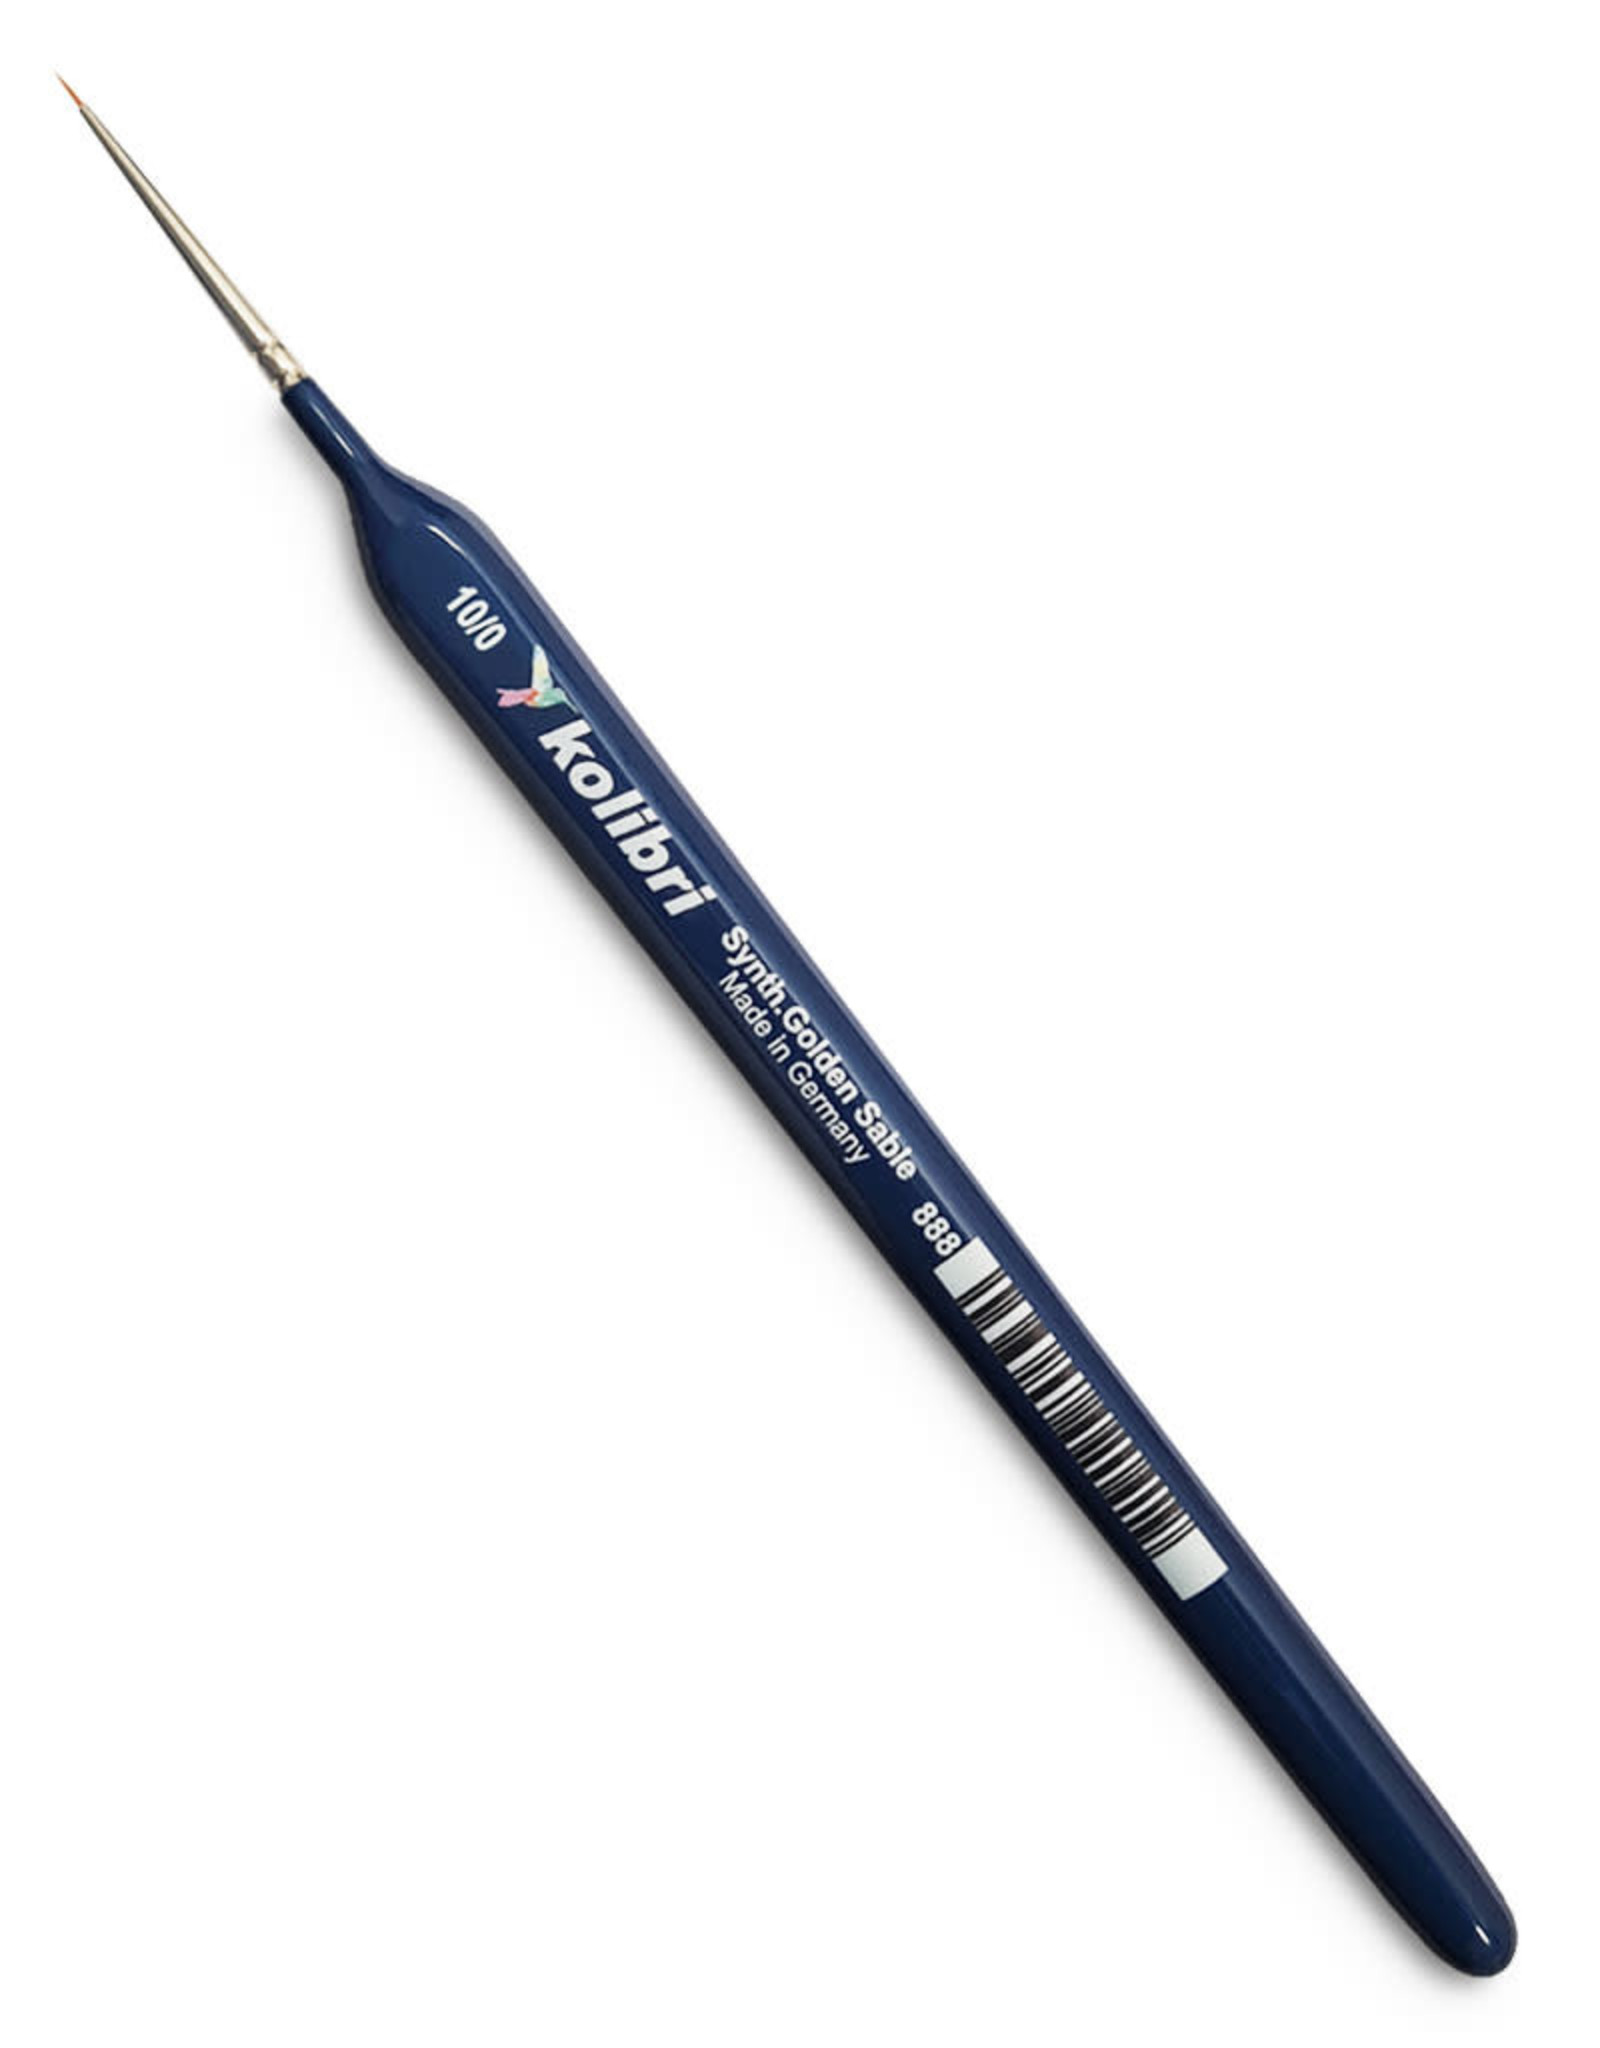 Kolibri 888-10/0 Synthetic Round brushes Short Handle